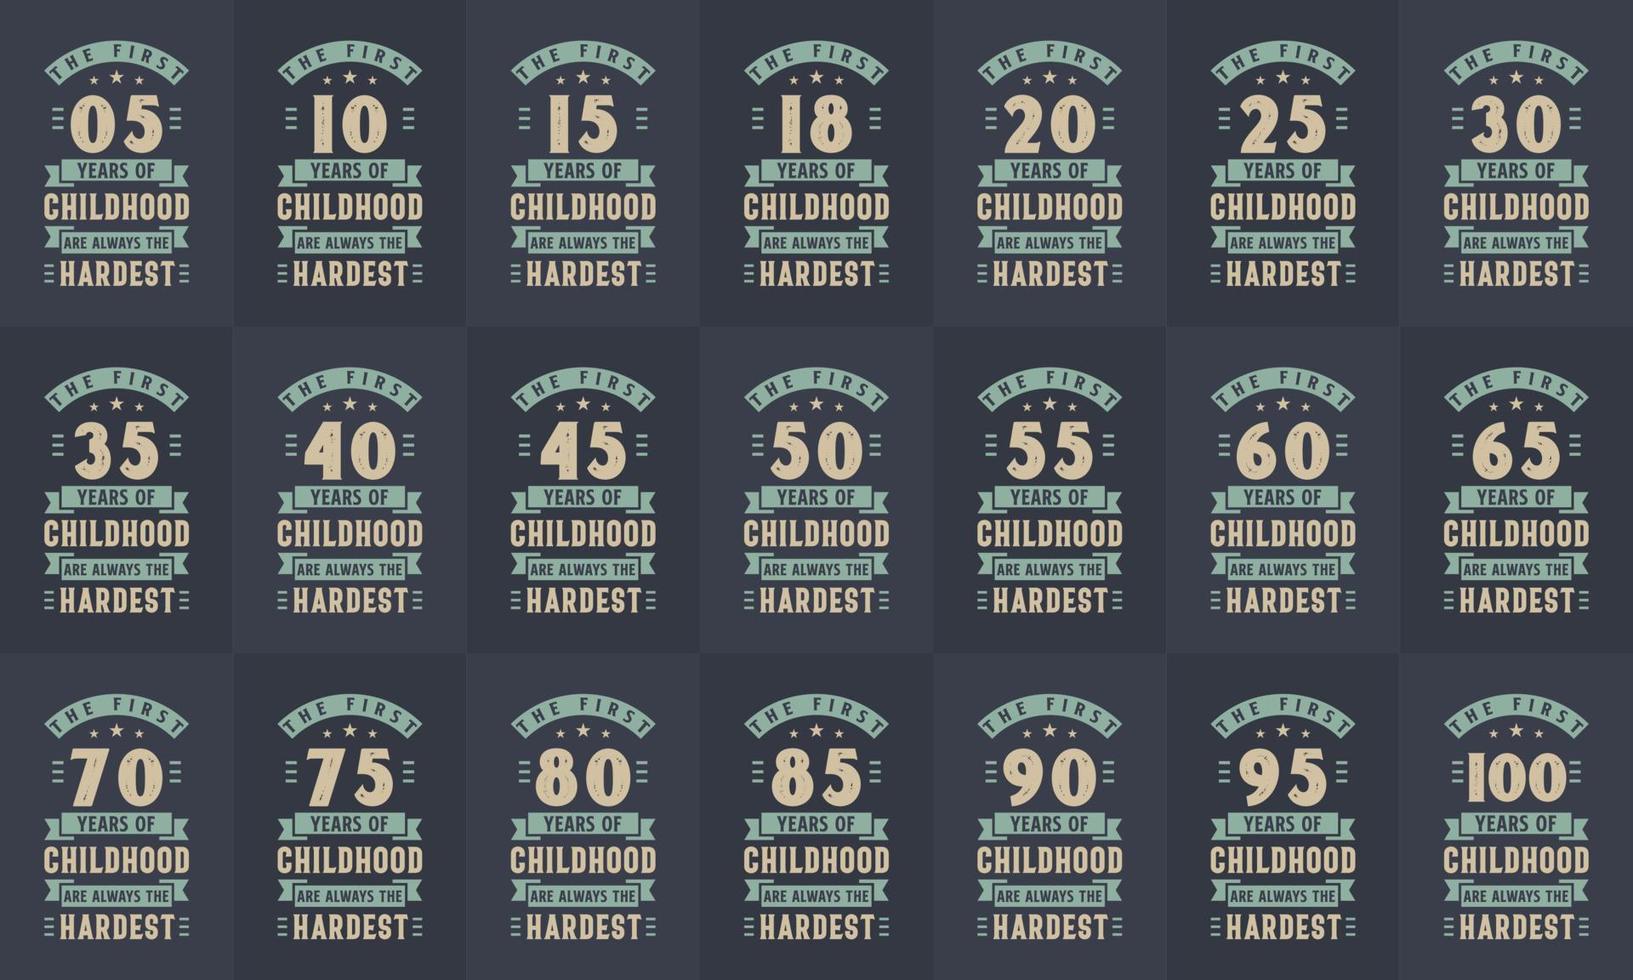 födelsedagsdesignpaket. retro vintage födelsedag typografi bunt. de första 5, 10, 15, 10, 15, 20, 25, 30, 35, 40, 45, 50, 55, 60, 65, 70, 75, 80, 85, 90, 95, 100 år av barndom vektor